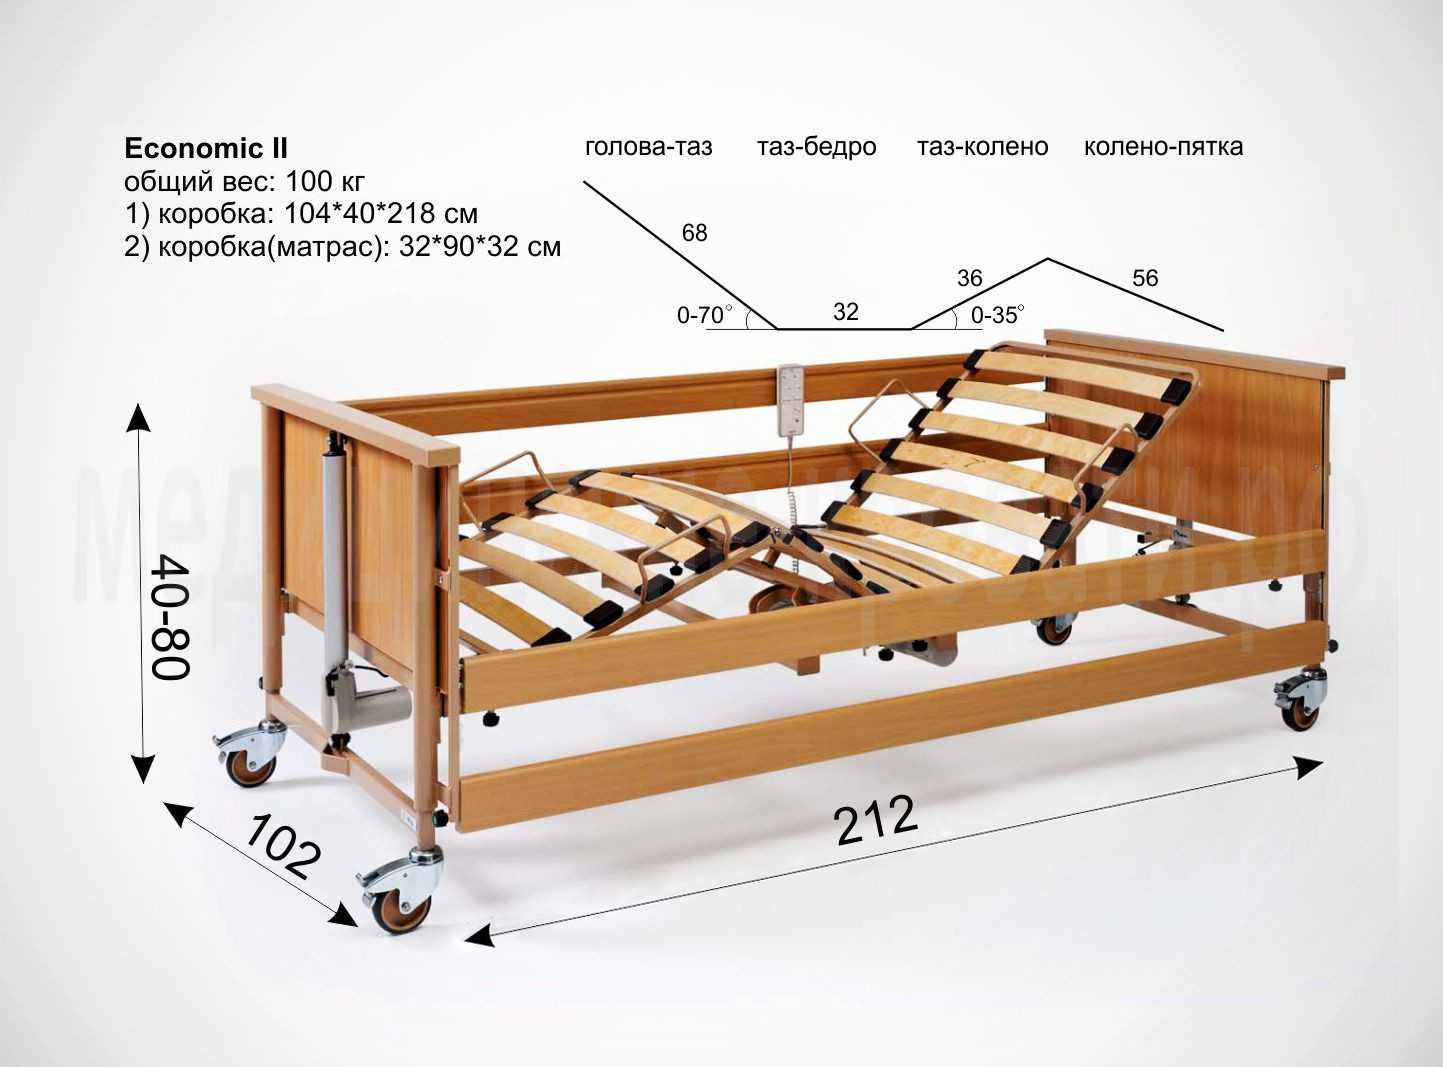 Размеры медицинской кровати